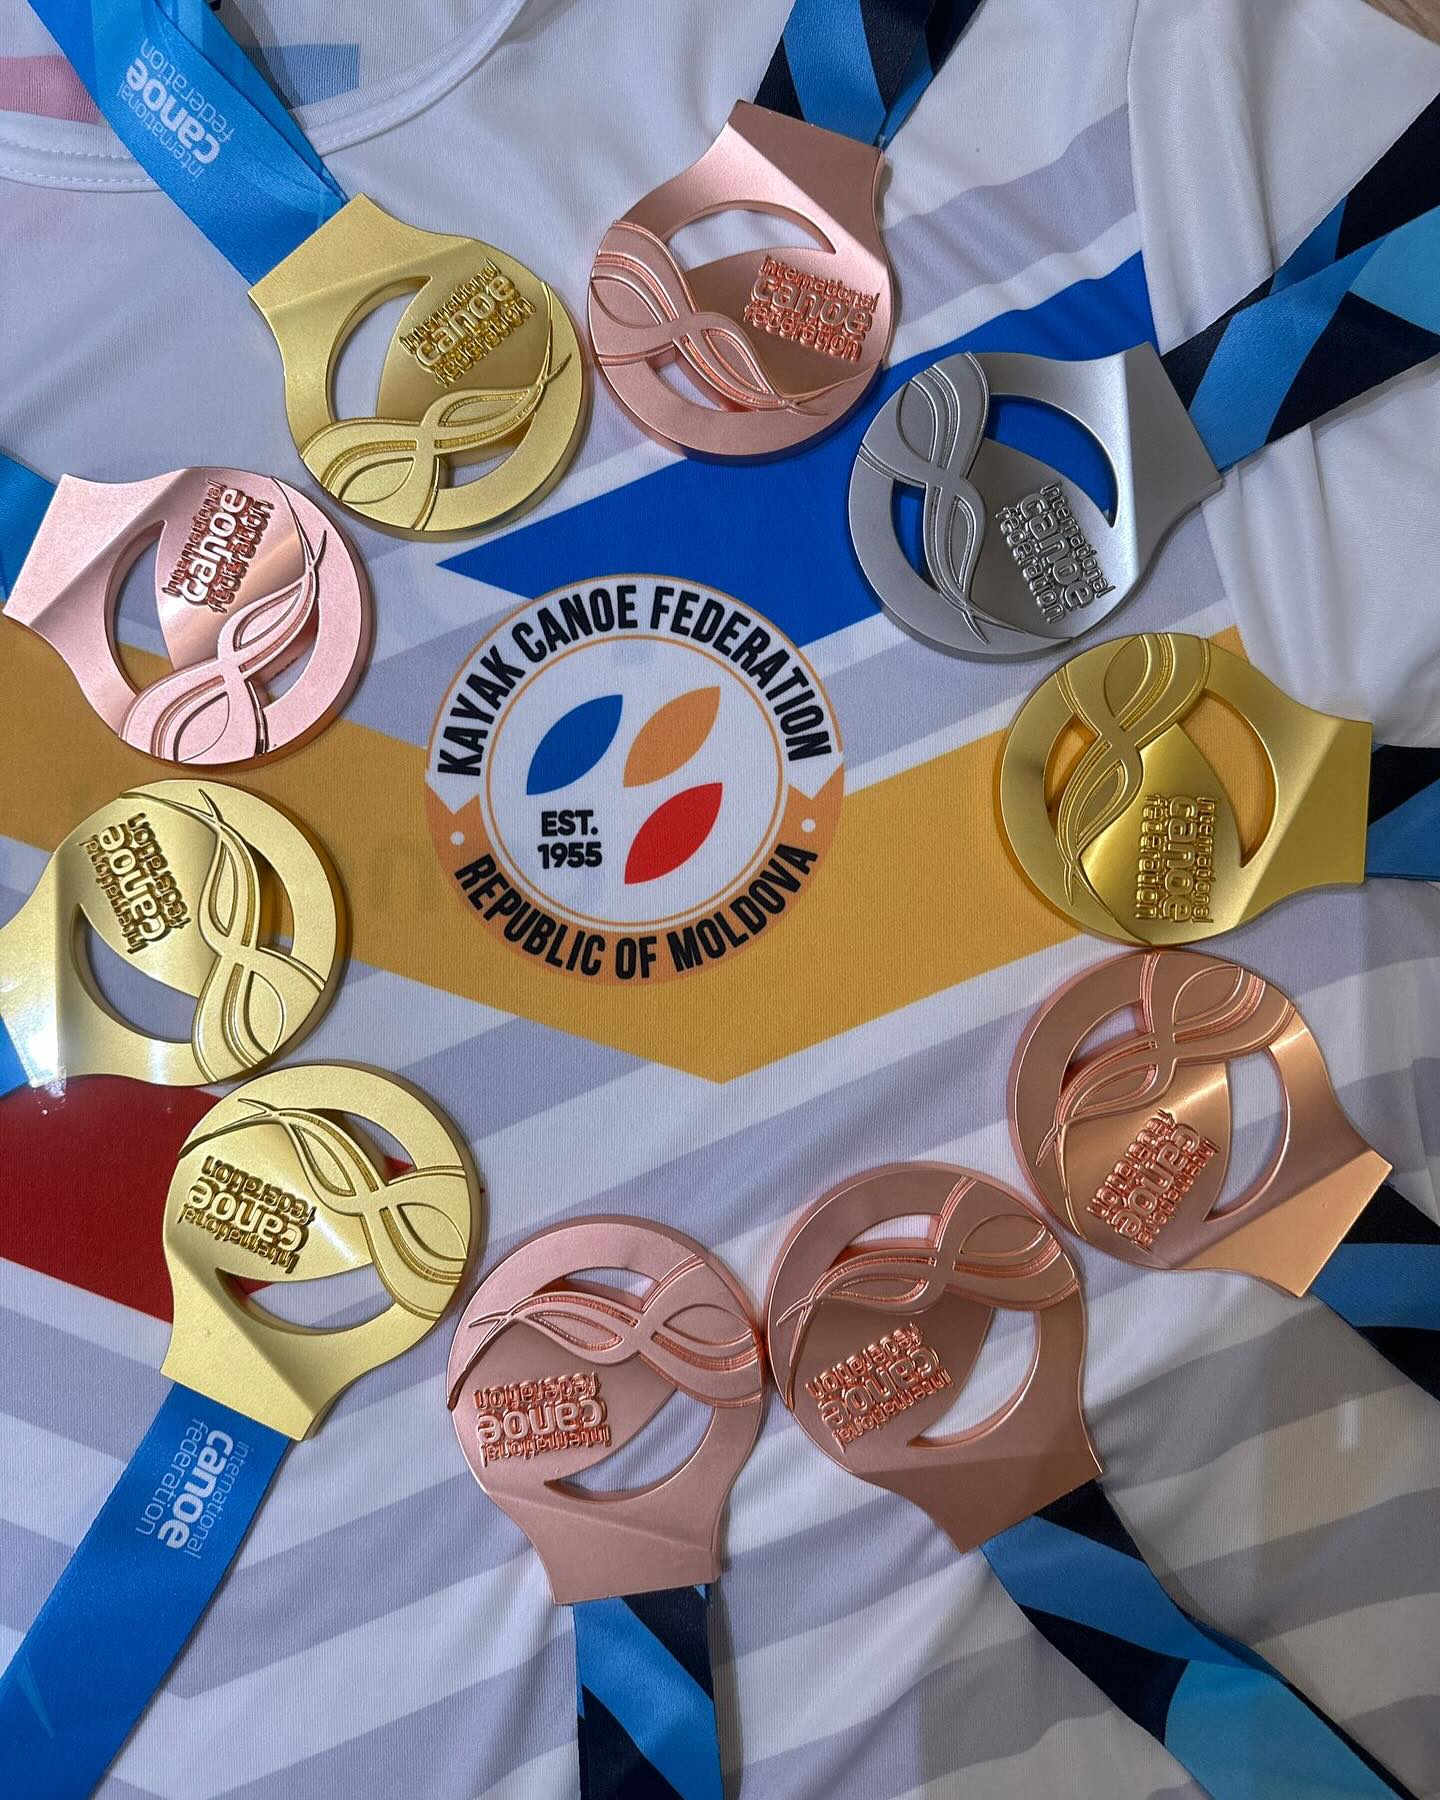 Președinta Maia Sandu felicită canoiștii din Moldova care au cucerit șapte medalii la campionatul mondial din Italia